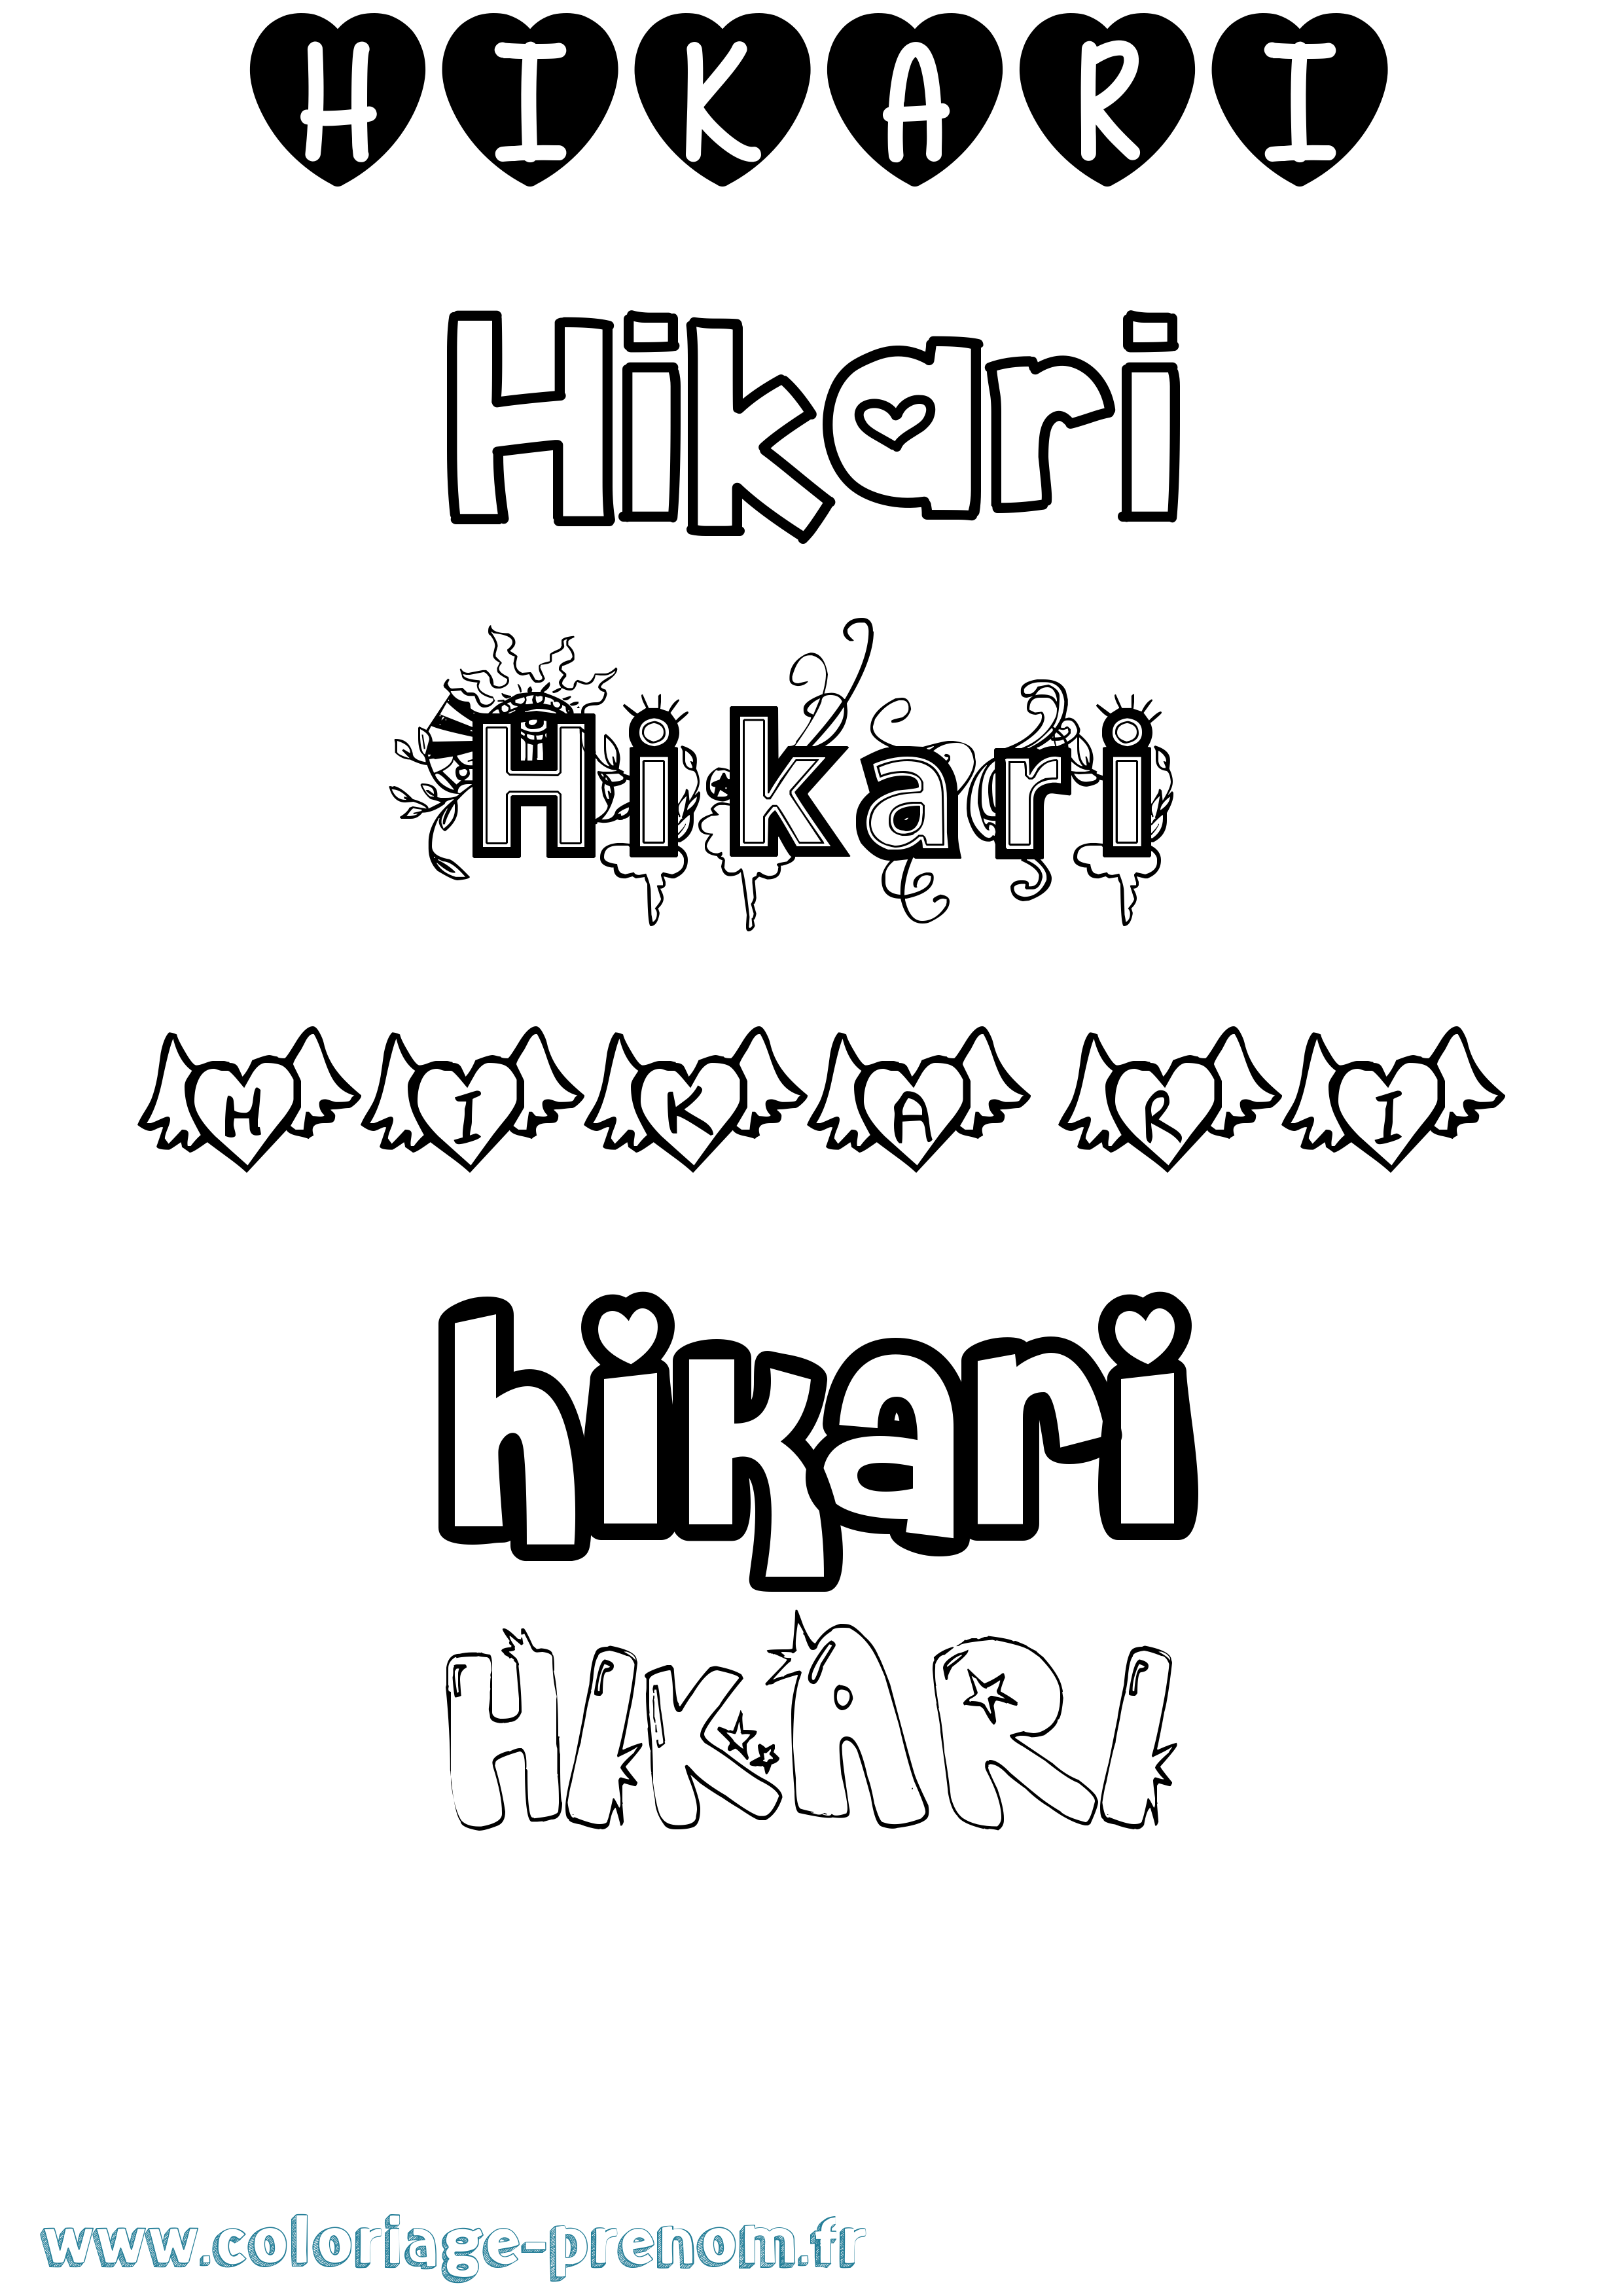 Coloriage prénom Hikari Girly